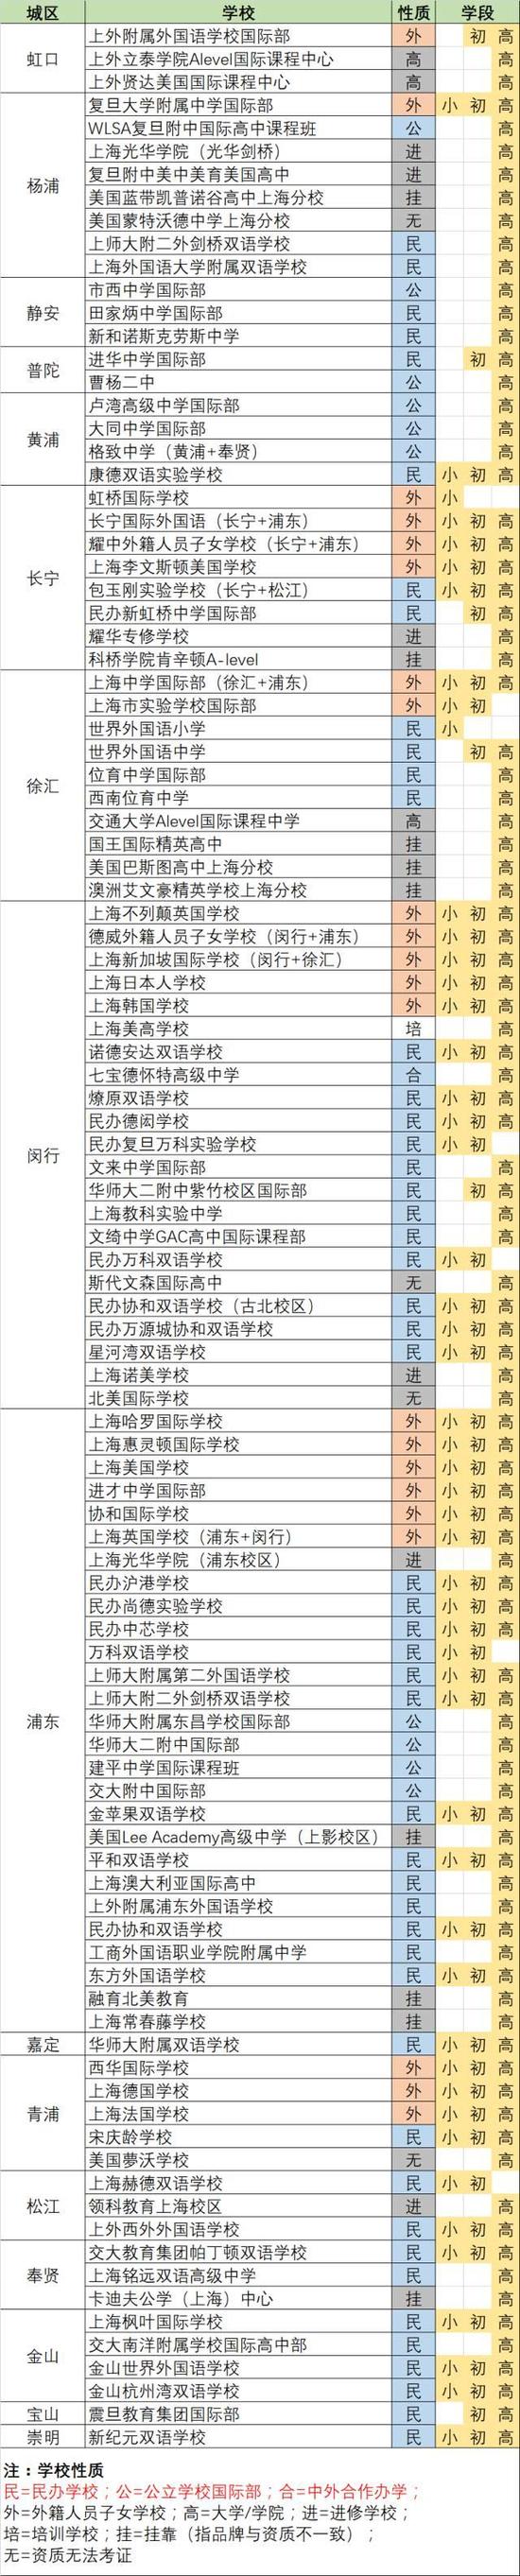 上海国际学校一览表